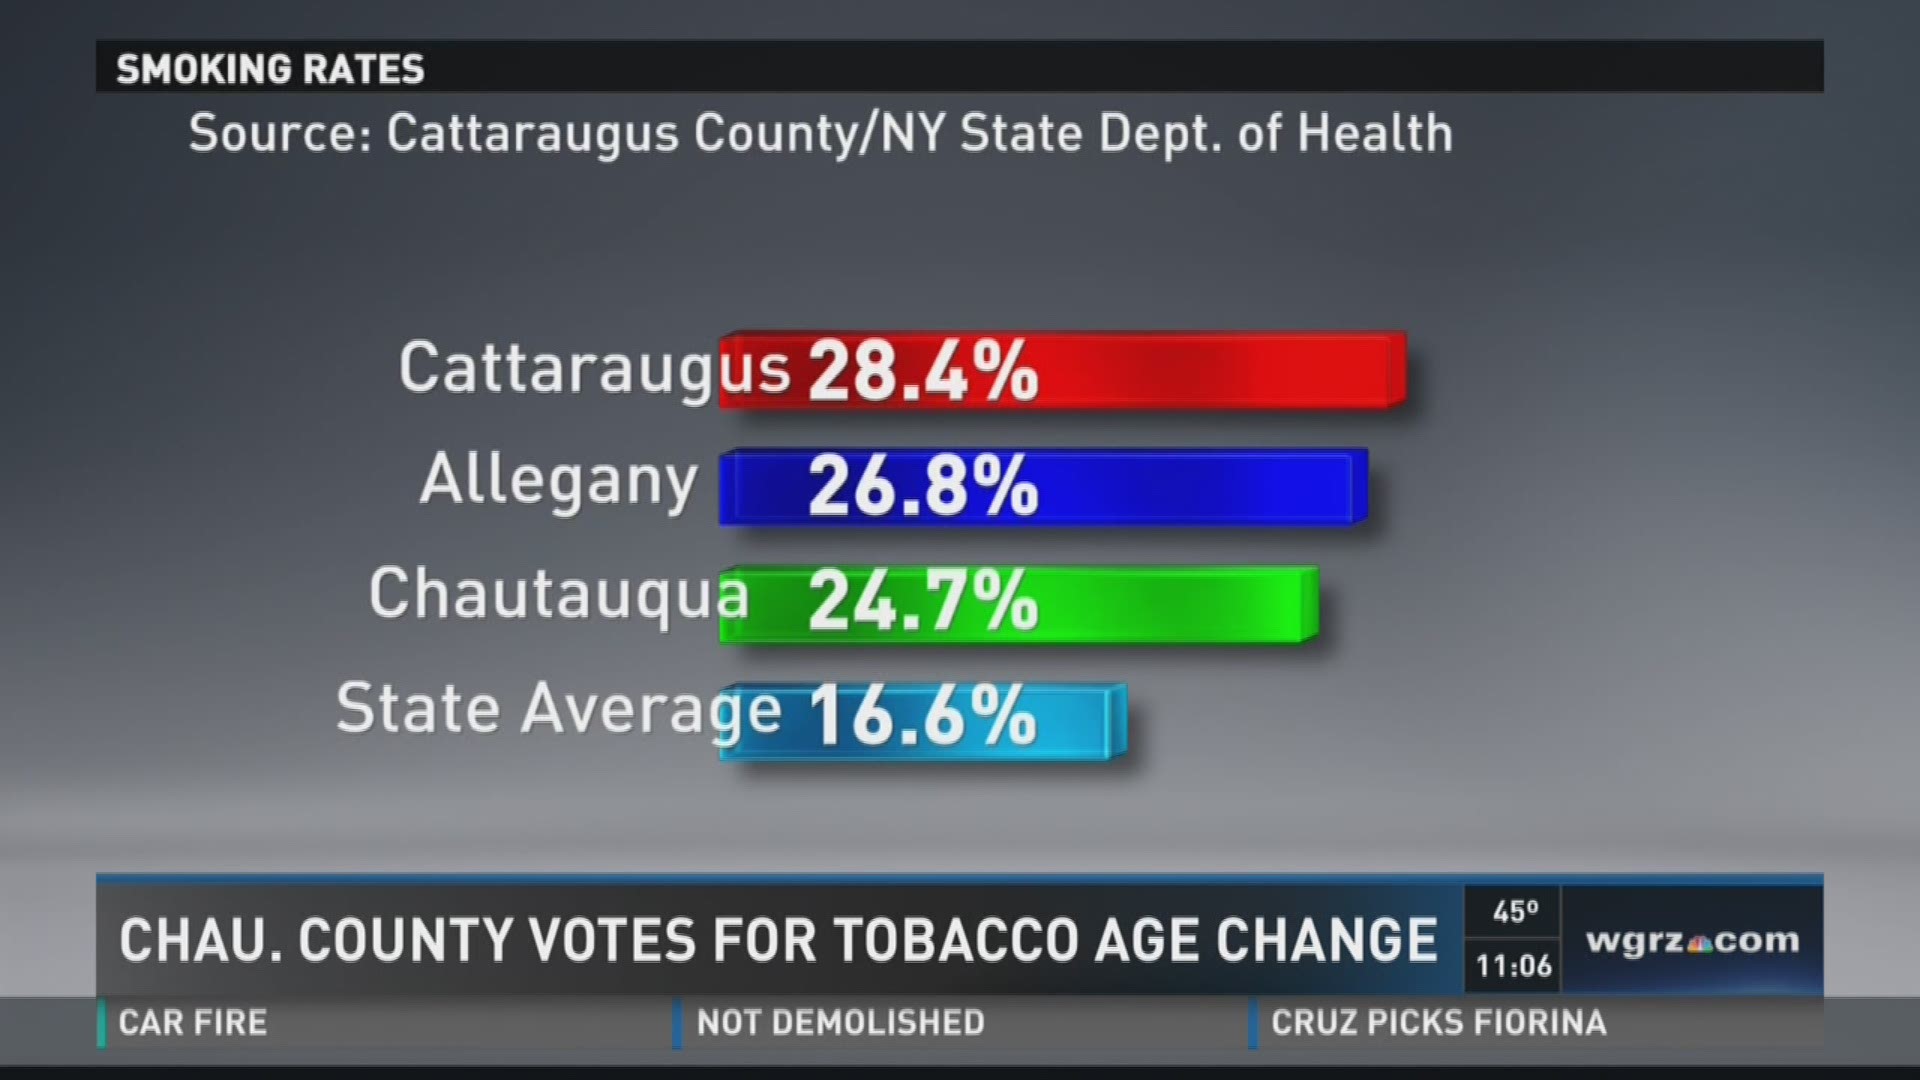 Chautauqua County Votes For Tobacco Age Change